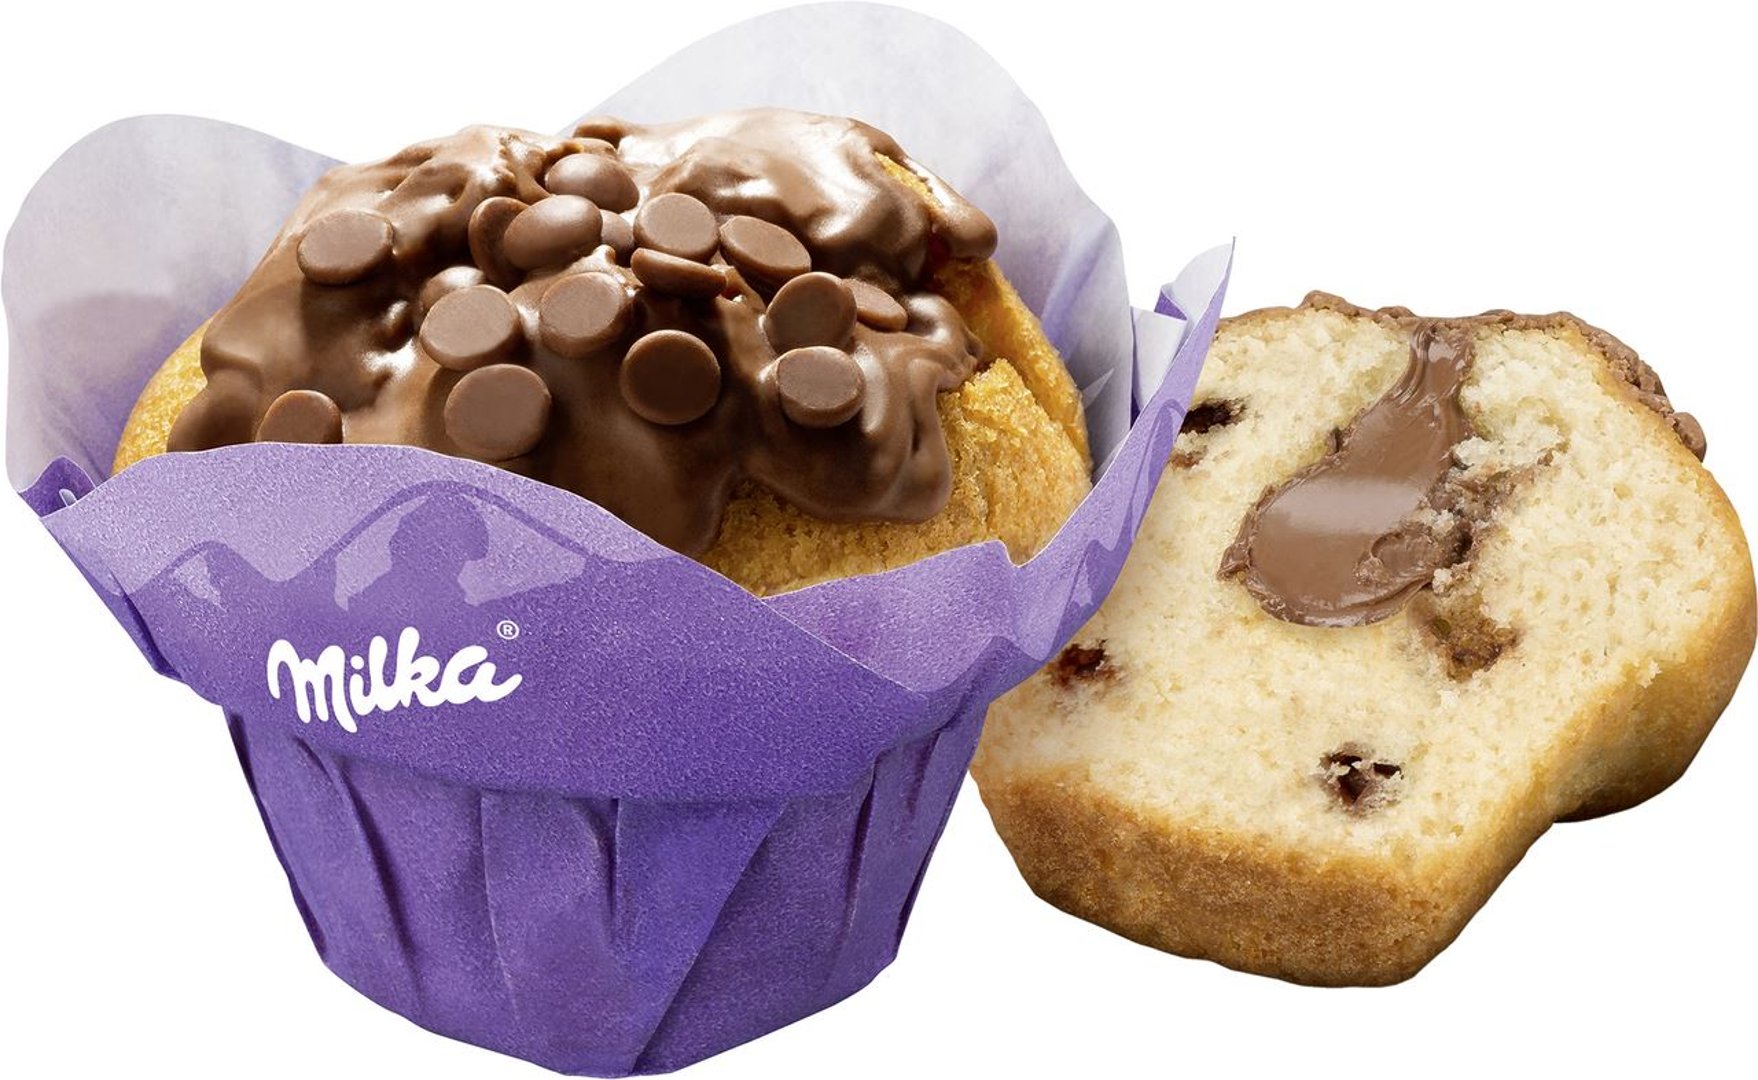 Milka - Muffin gefüllt - 12 Stück à 110 g Packung